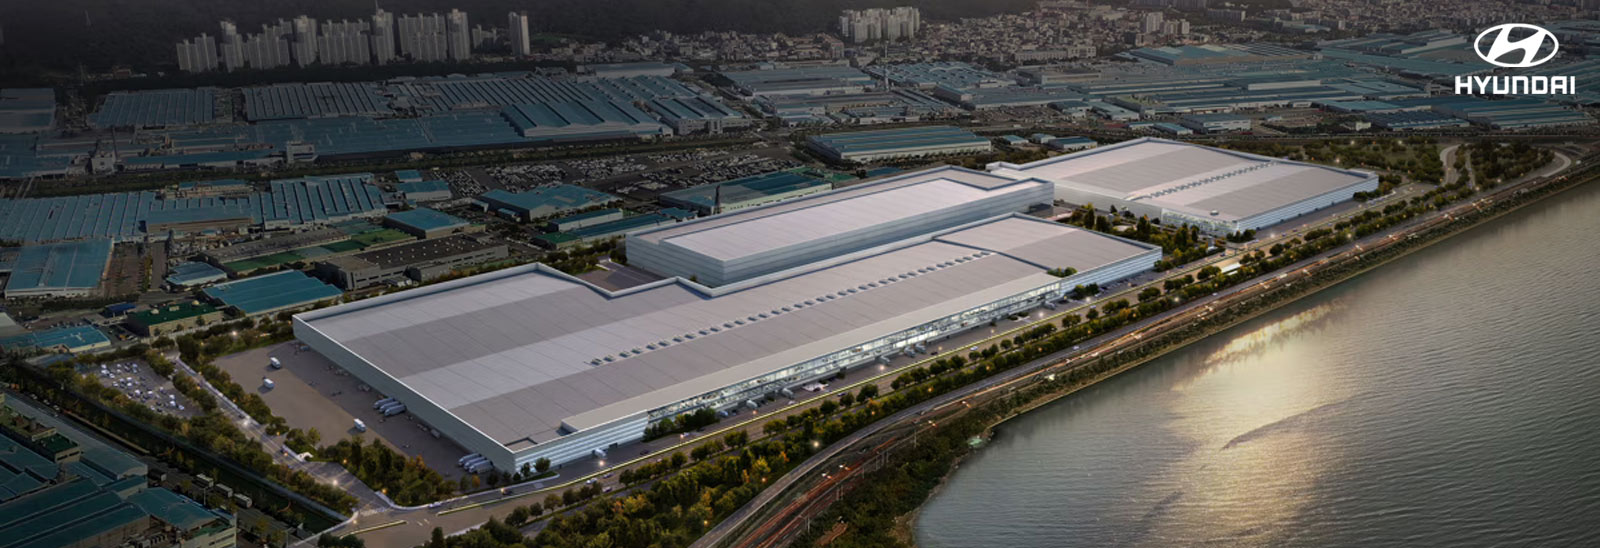 Hyundai Motor avanza en su visión de electrificación con una nueva planta